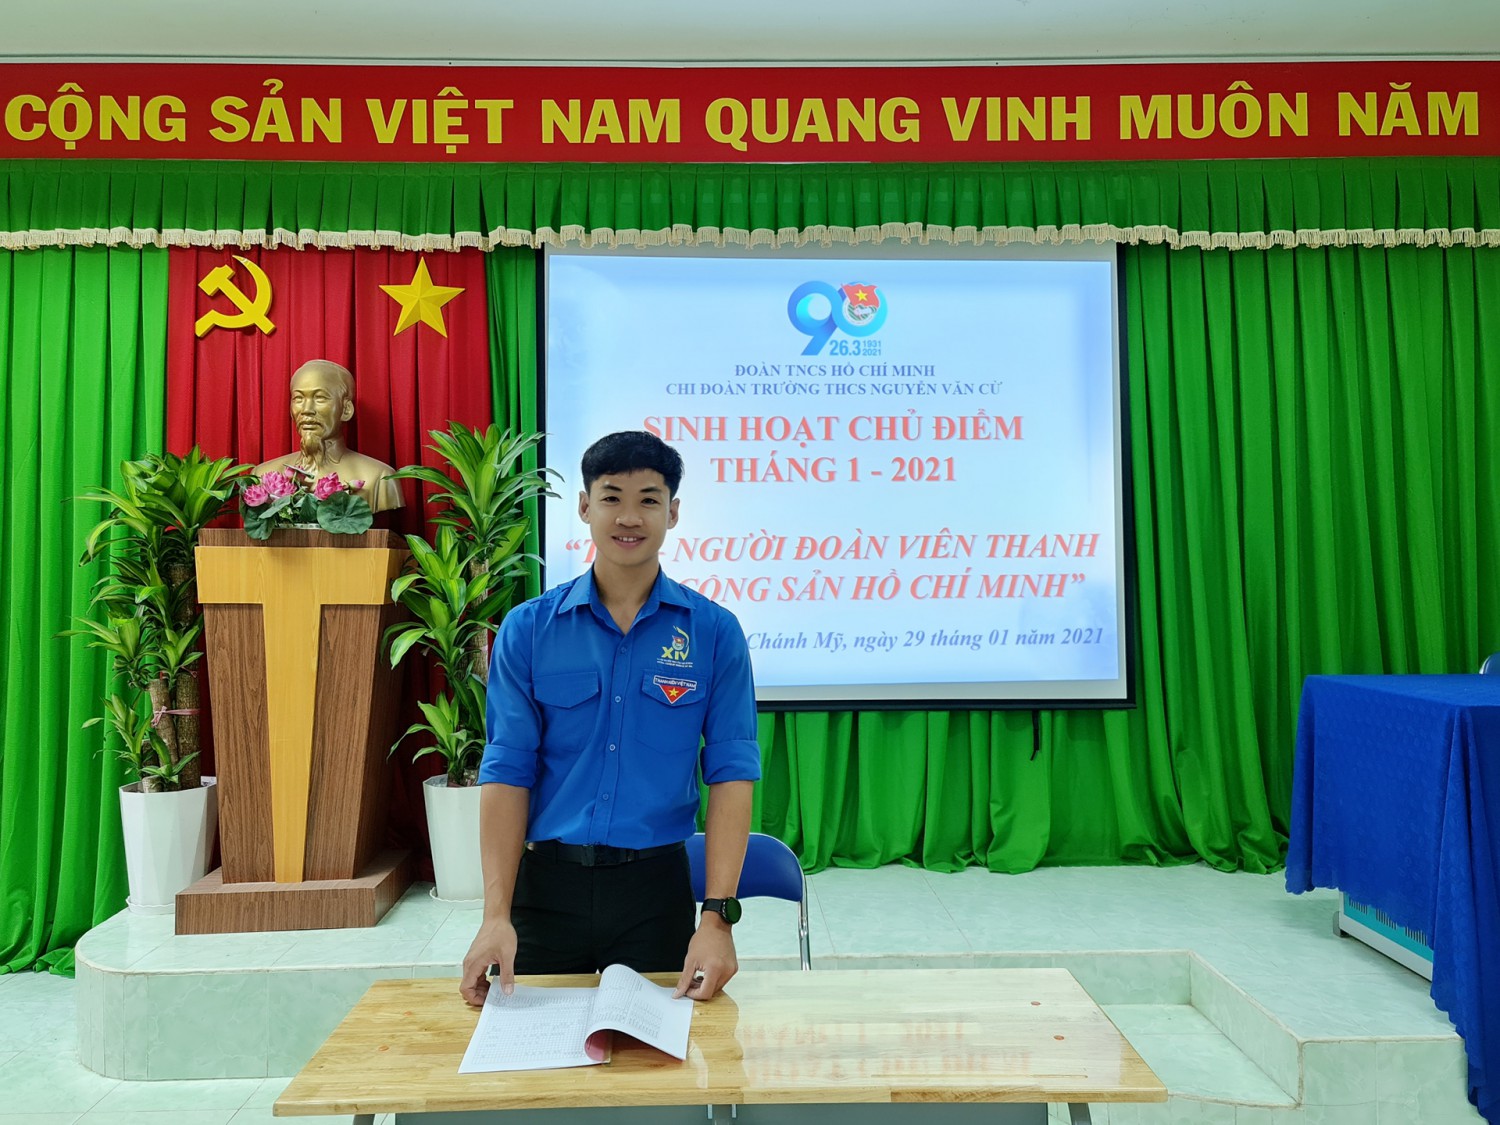 Đ/c Huỳnh Tuấn Huy - Bí thư chi đoàn triển khai sinh hoạt chủ điểm